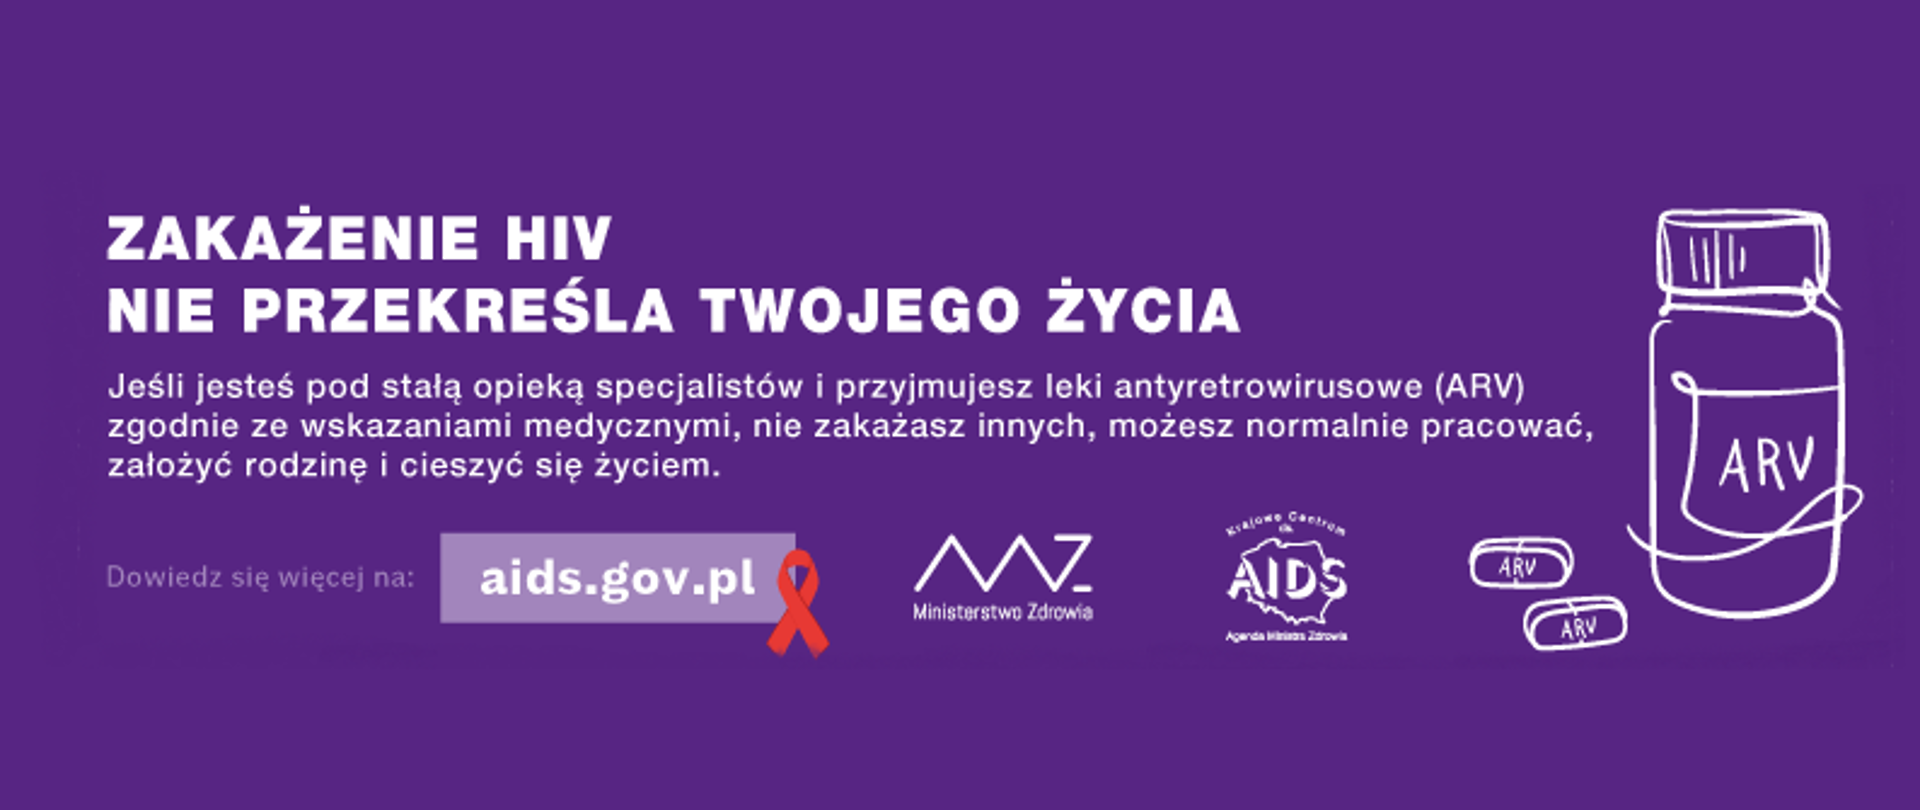 Grafika kampanii "Czy wiesz, że..." z białym napisem na filetowym tle "Zakażenie HIV nie przekreśla Twojego życia. Dowiedz się więcej na aids.gov.pl"